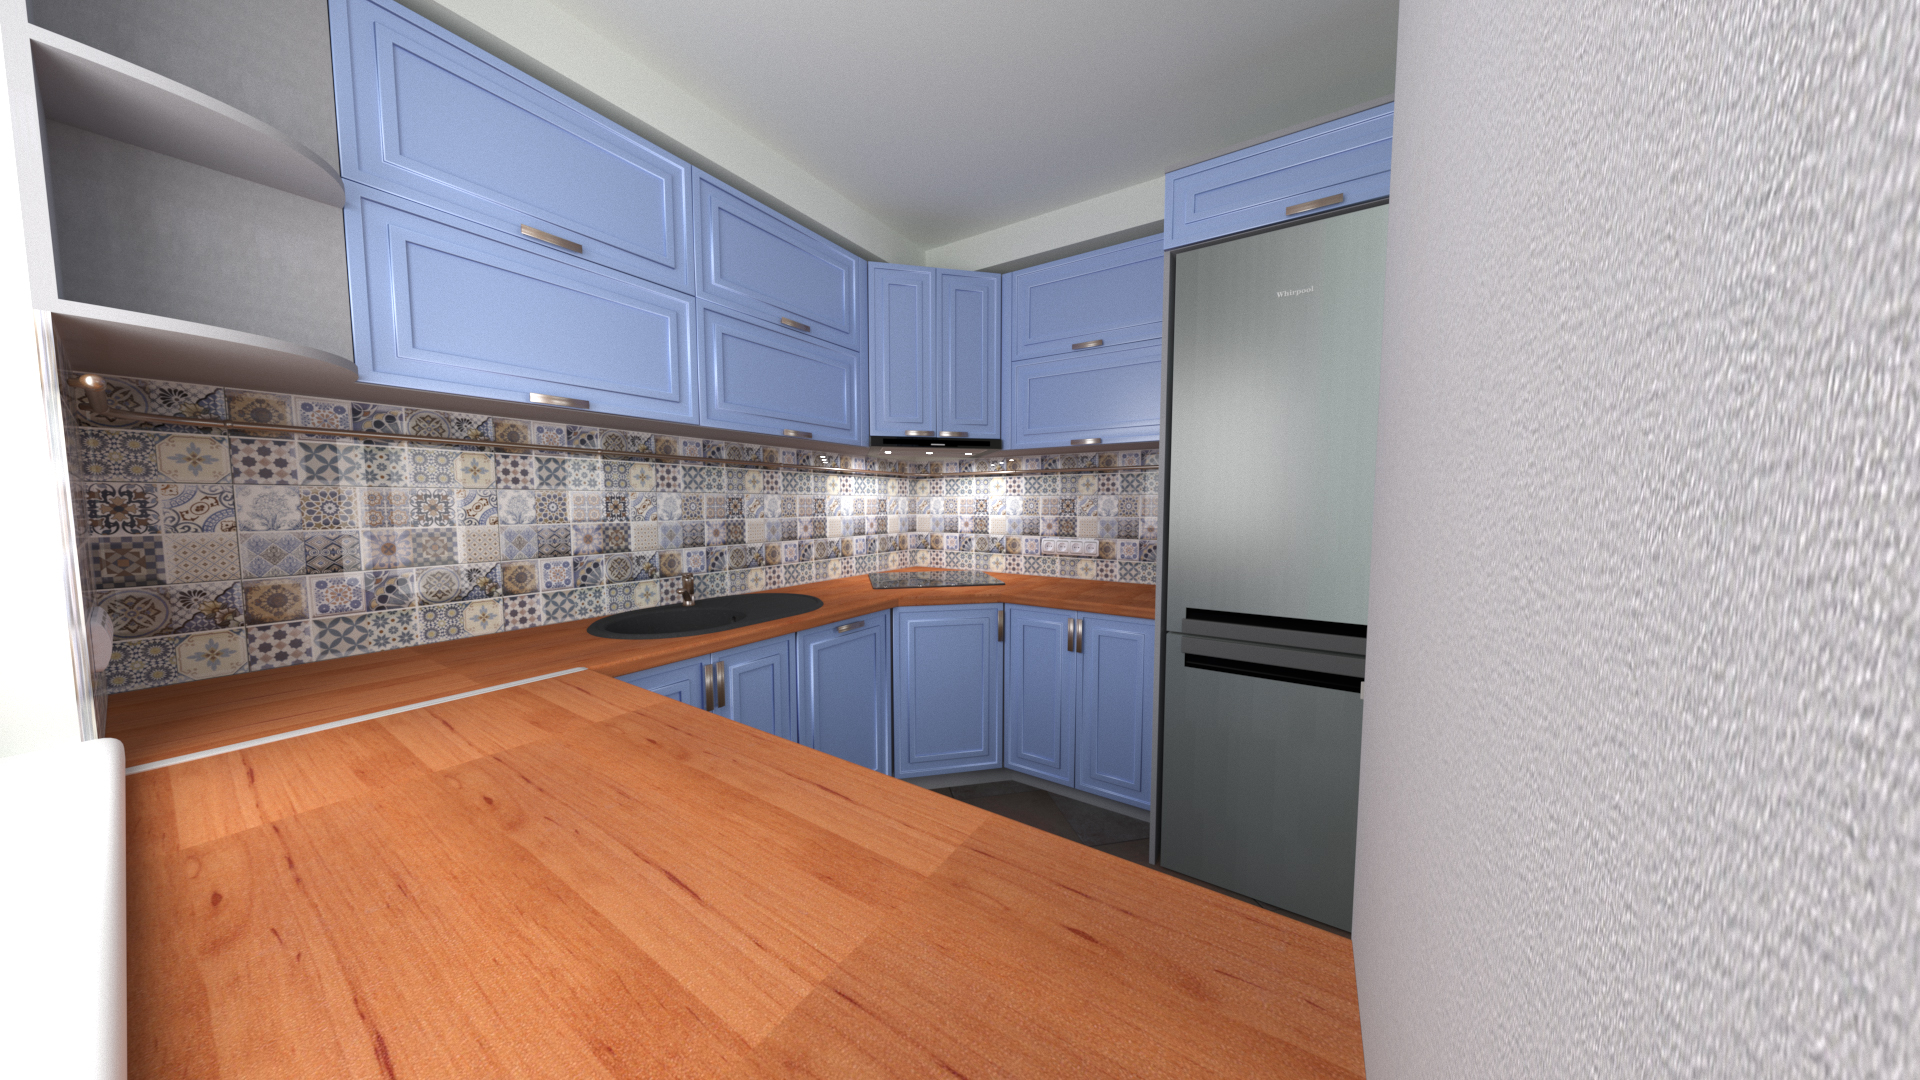 A cozinha no chasnom casa em 3d max corona render imagem